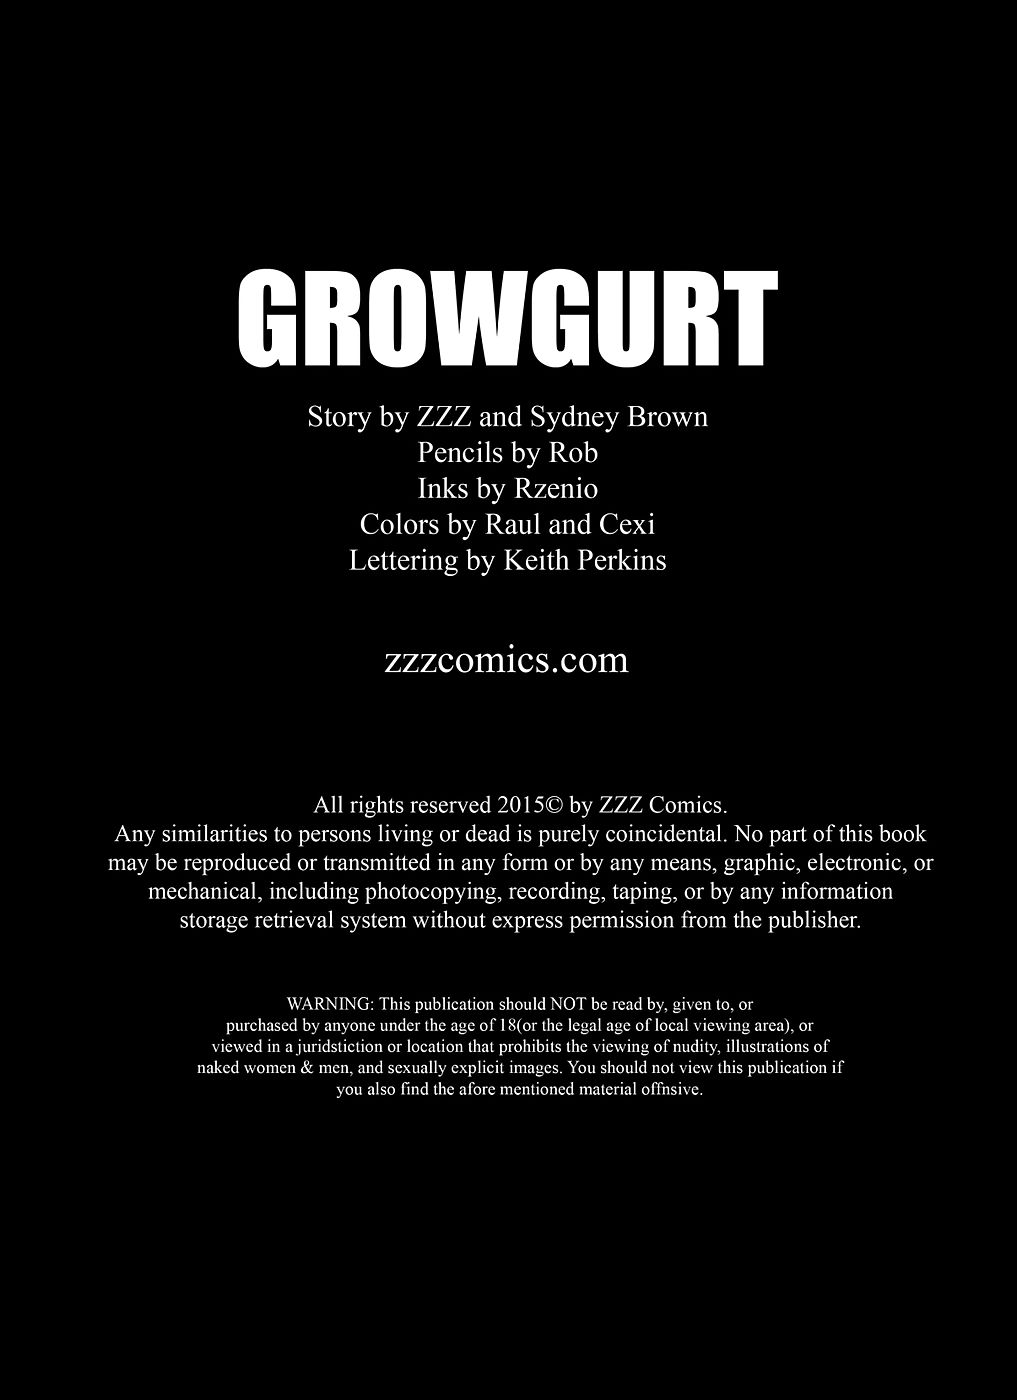 zzz growcurt page 1